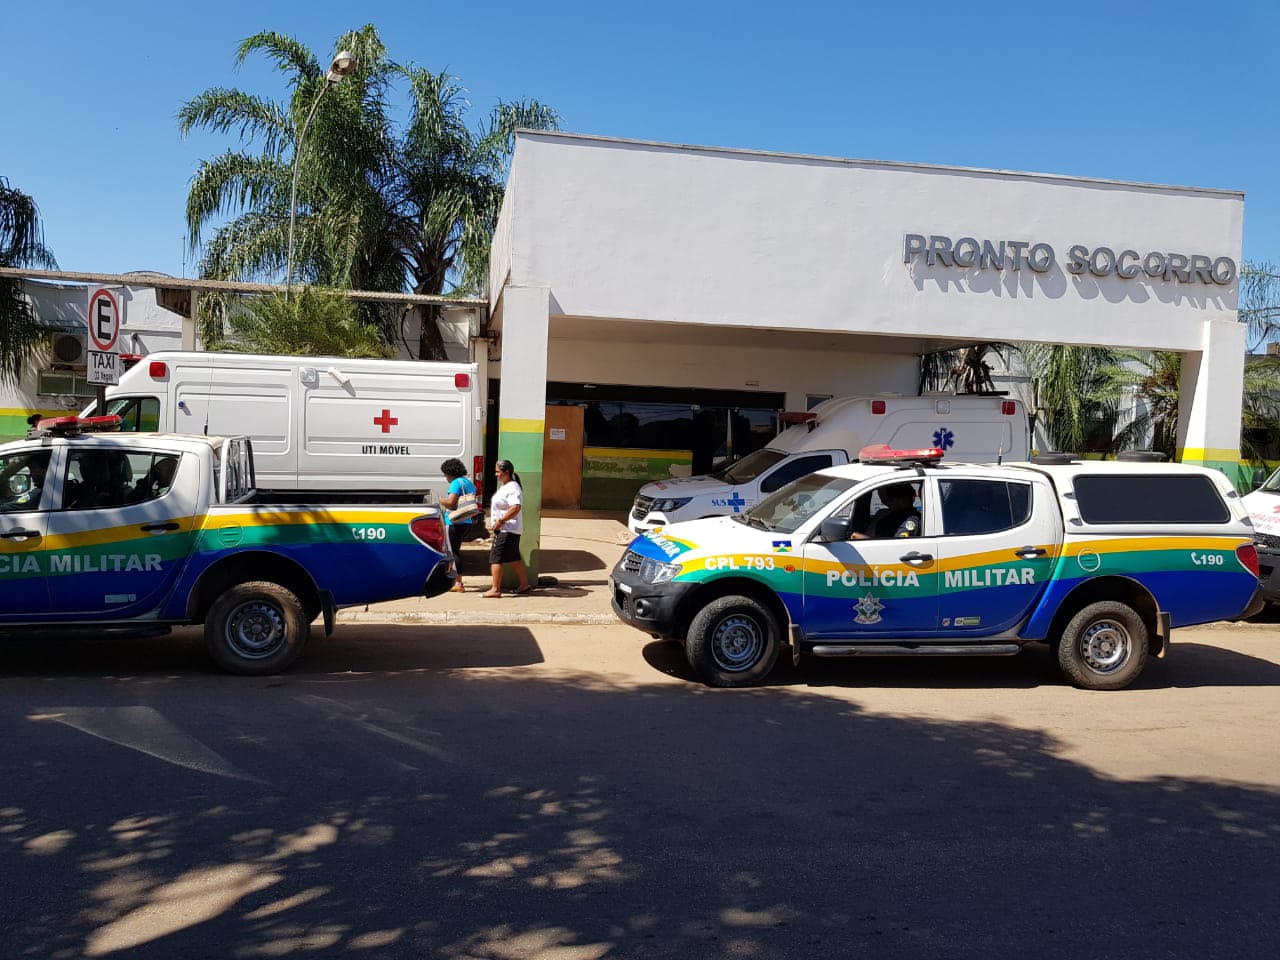 Jovem fica em estado grave após ser agredido à paulada no bairro Ronaldo Aragão - News Rondônia